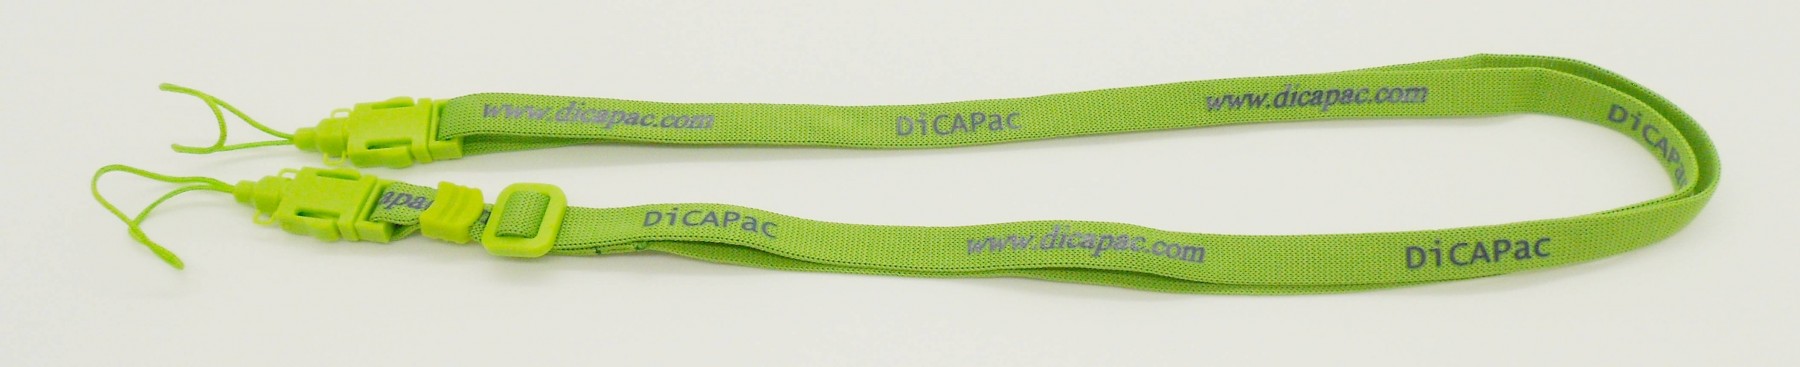 dicapac ersatzteil trageriehmen neck strap viele dicapac modelle - blau